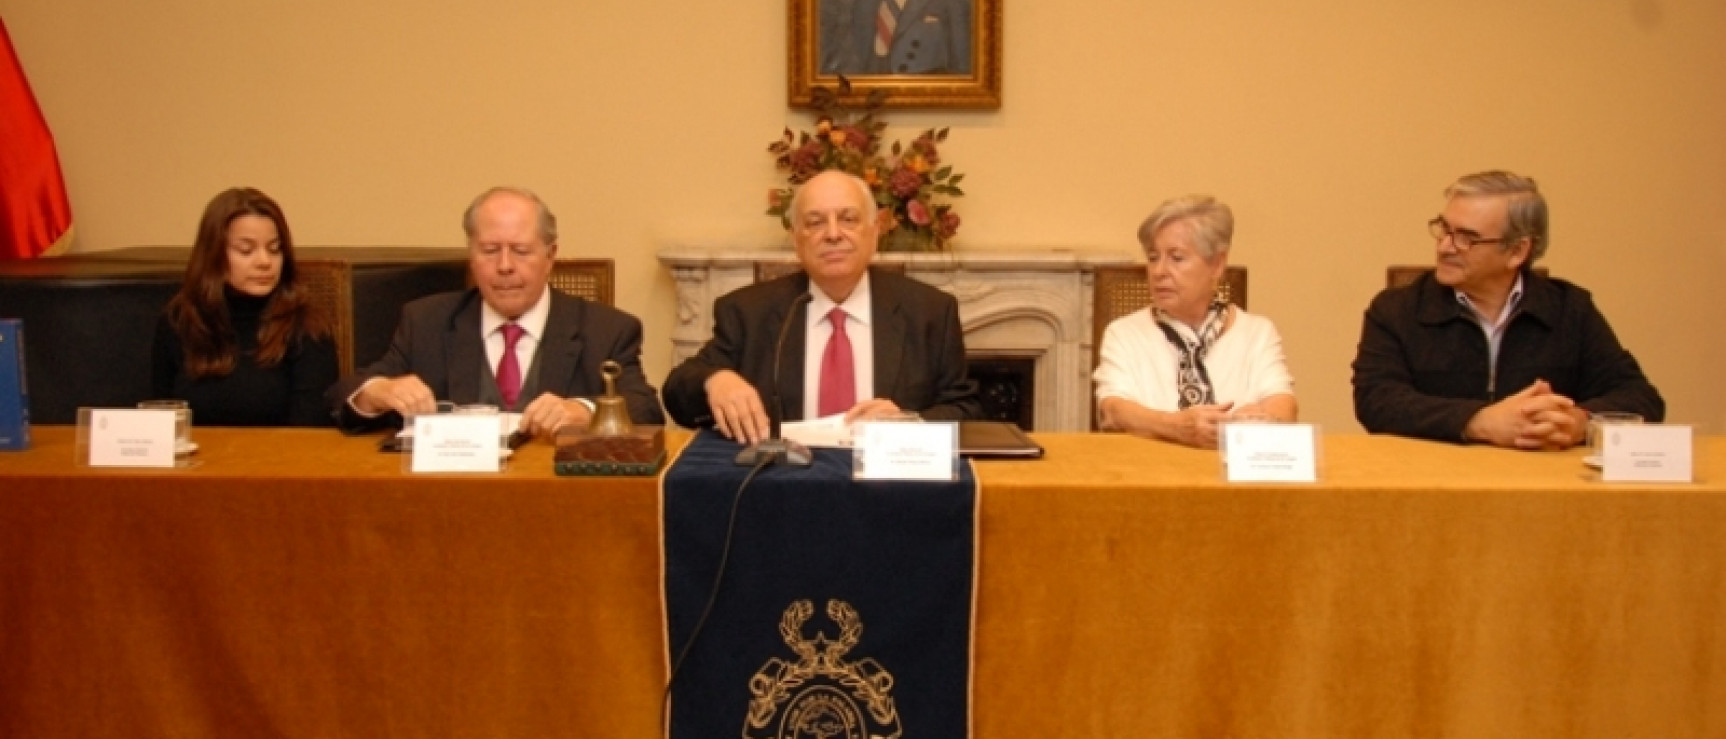 De izquierda a derecha: Elsy Salazar, José Luis Samaniego, Alfredo Matus, Adriana Valdés y Arturo Infante.